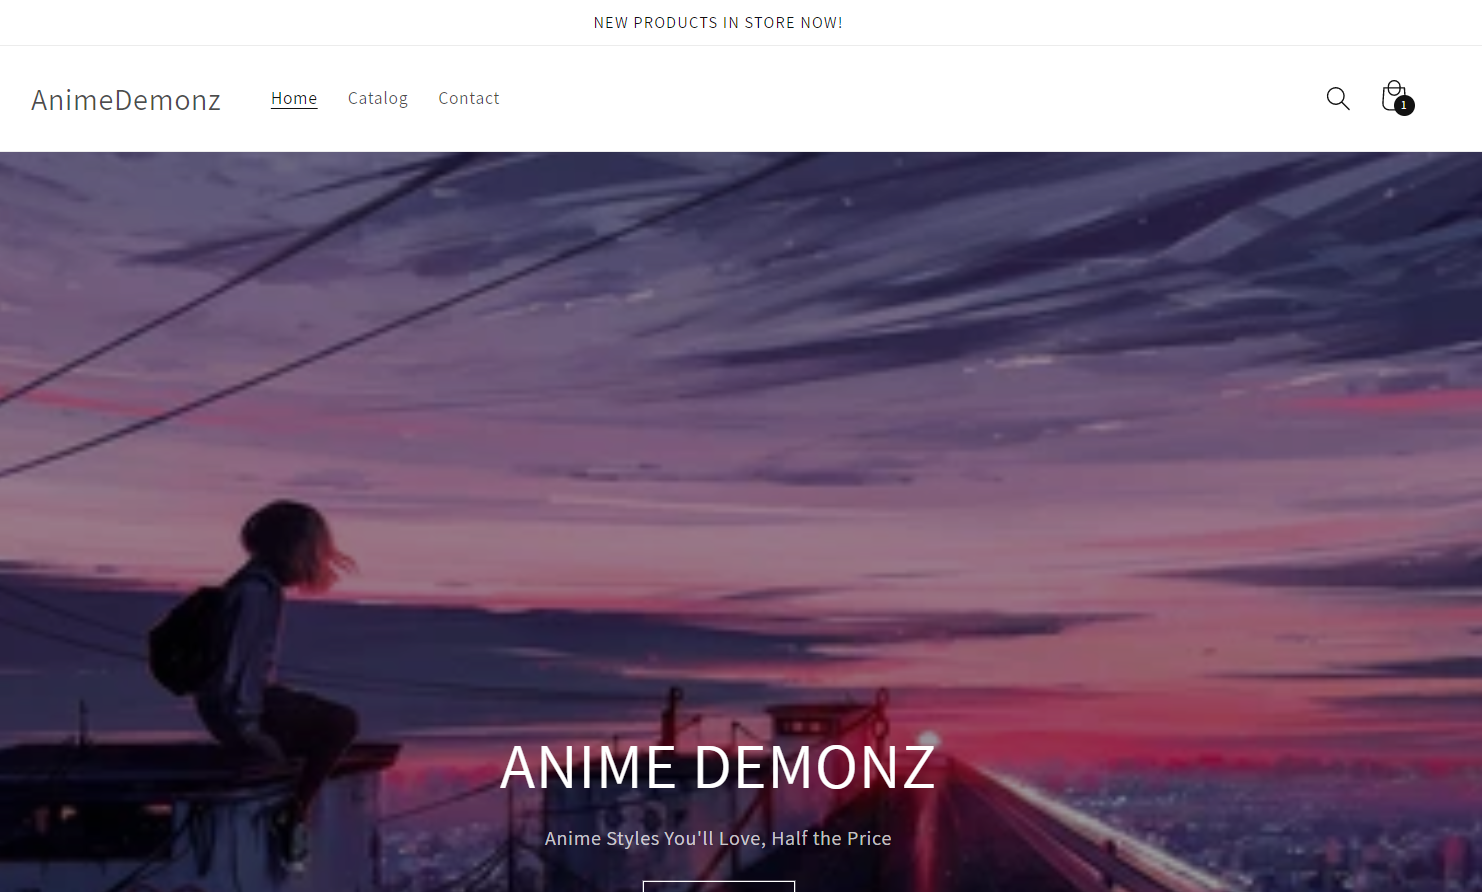 Animedemonz.com review legit or scam